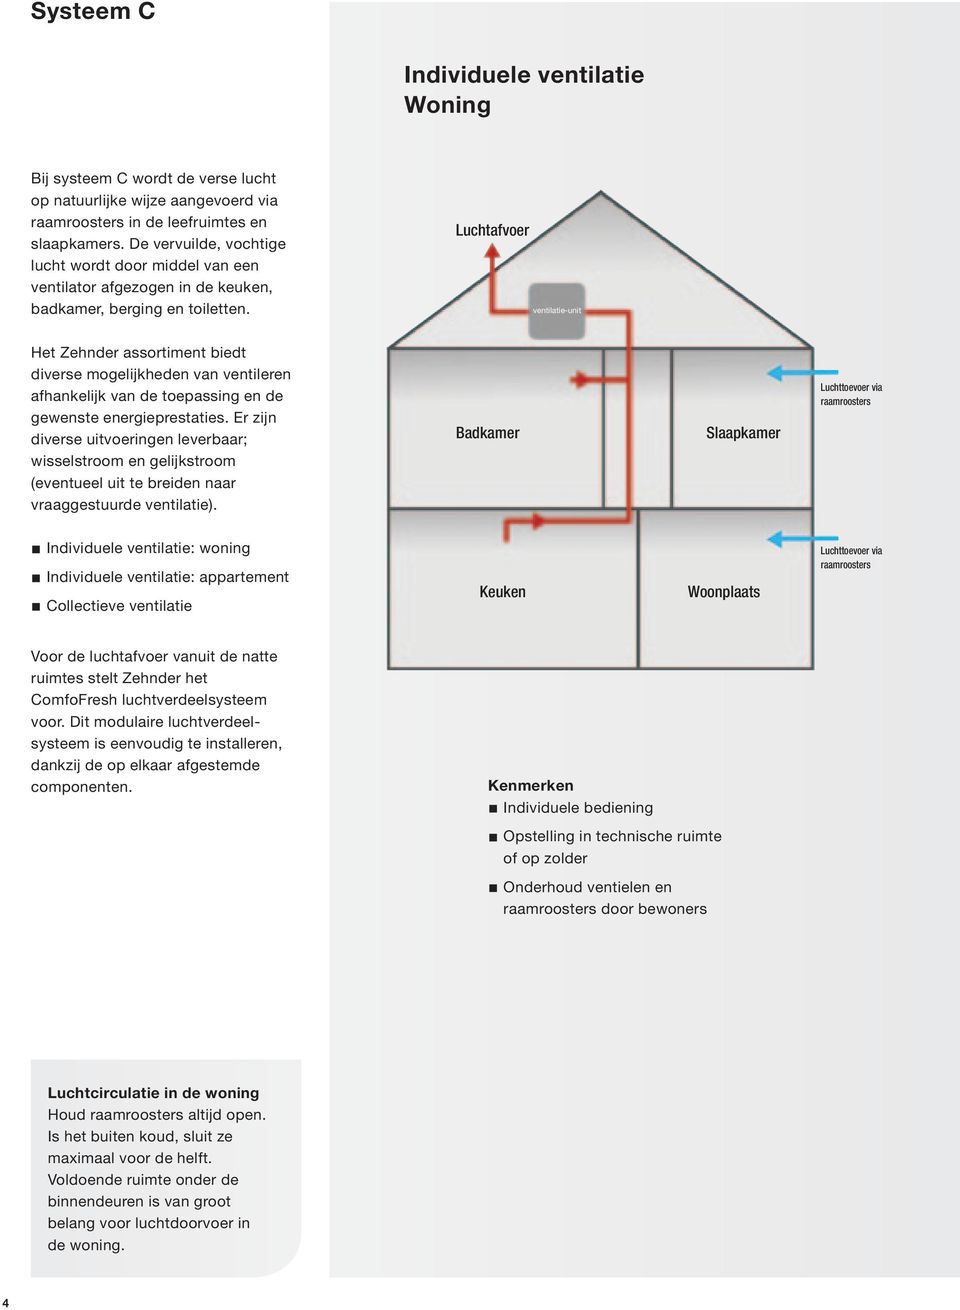 Luchtafvoer ventilatie-unit Het Zehnder assortiment biedt diverse mogelijkheden van ventileren afhankelijk van de toepassing en de gewenste energieprestaties.